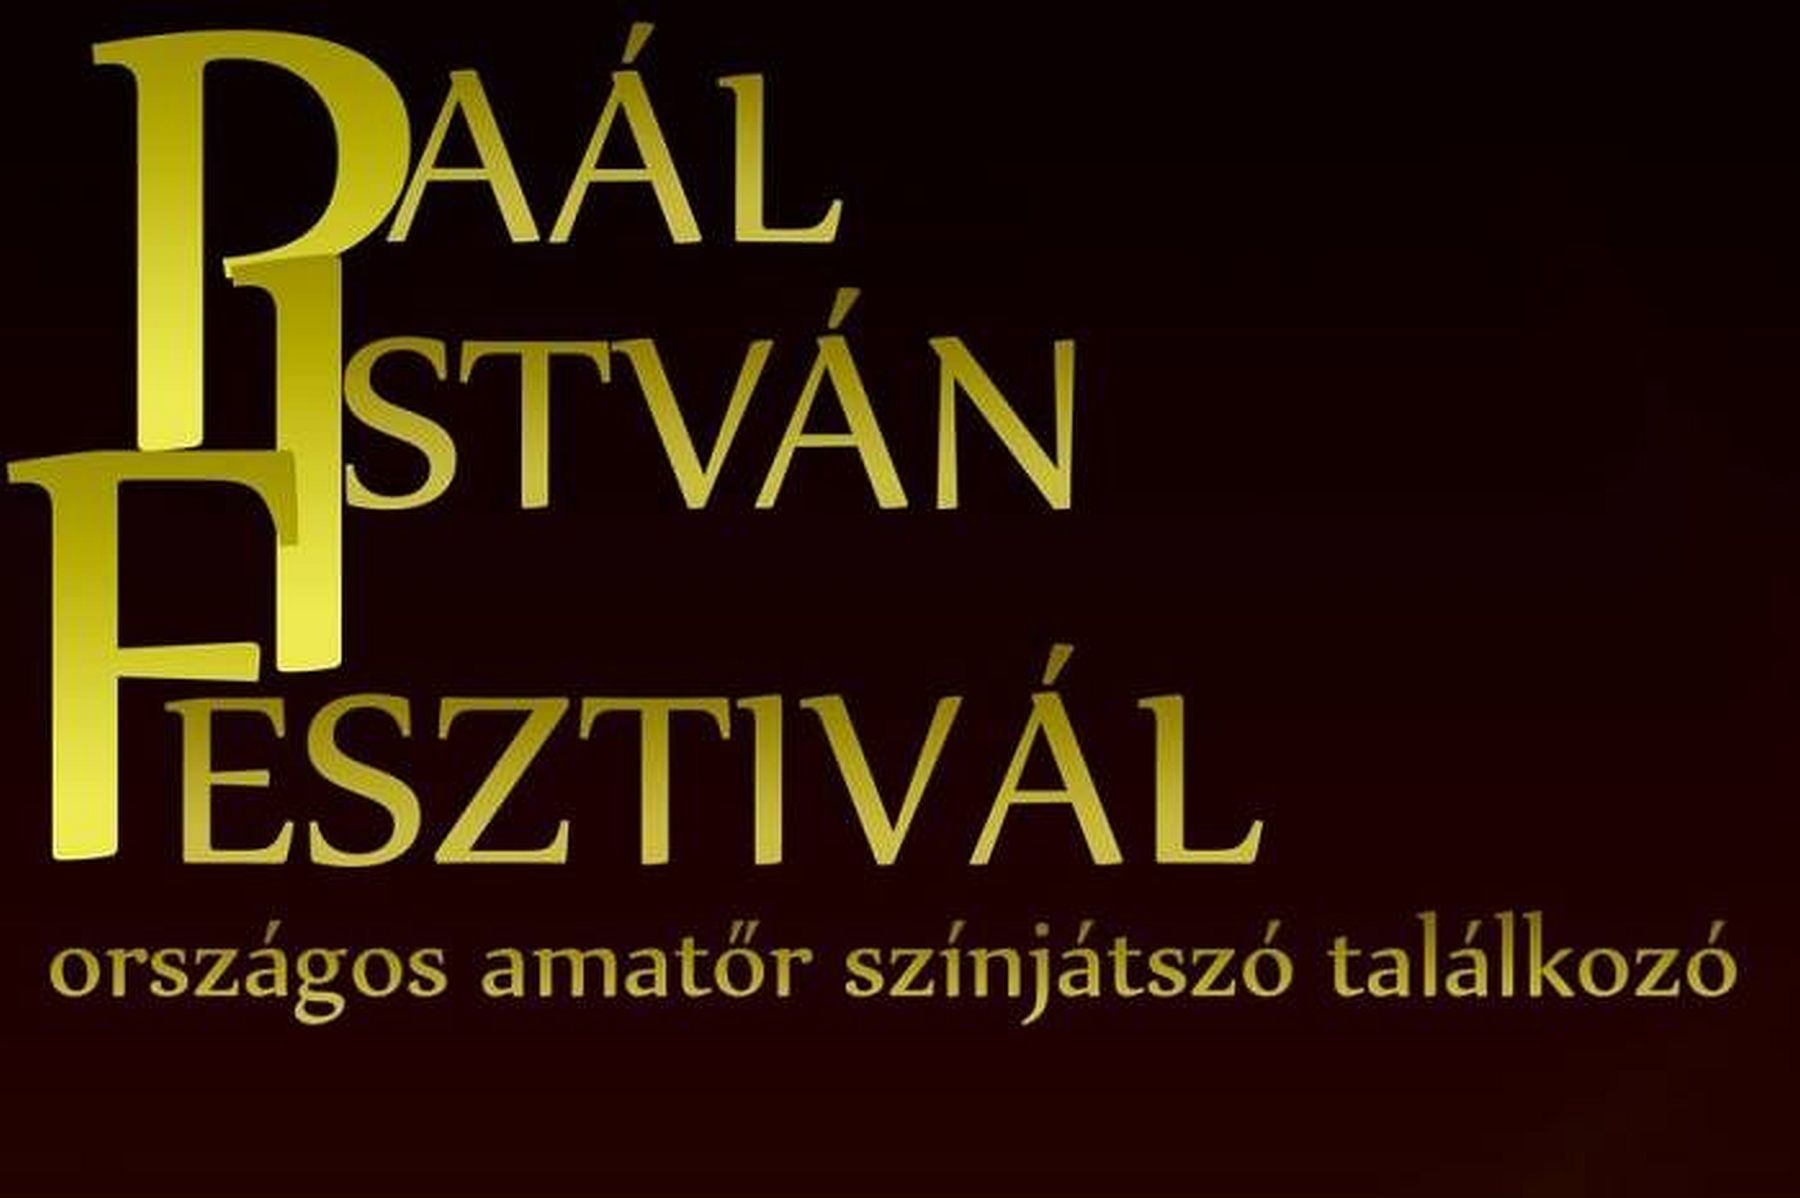 VIII. Paál István Fesztivál - országos amatőr színjátszó találkozó lesz Fehérváron